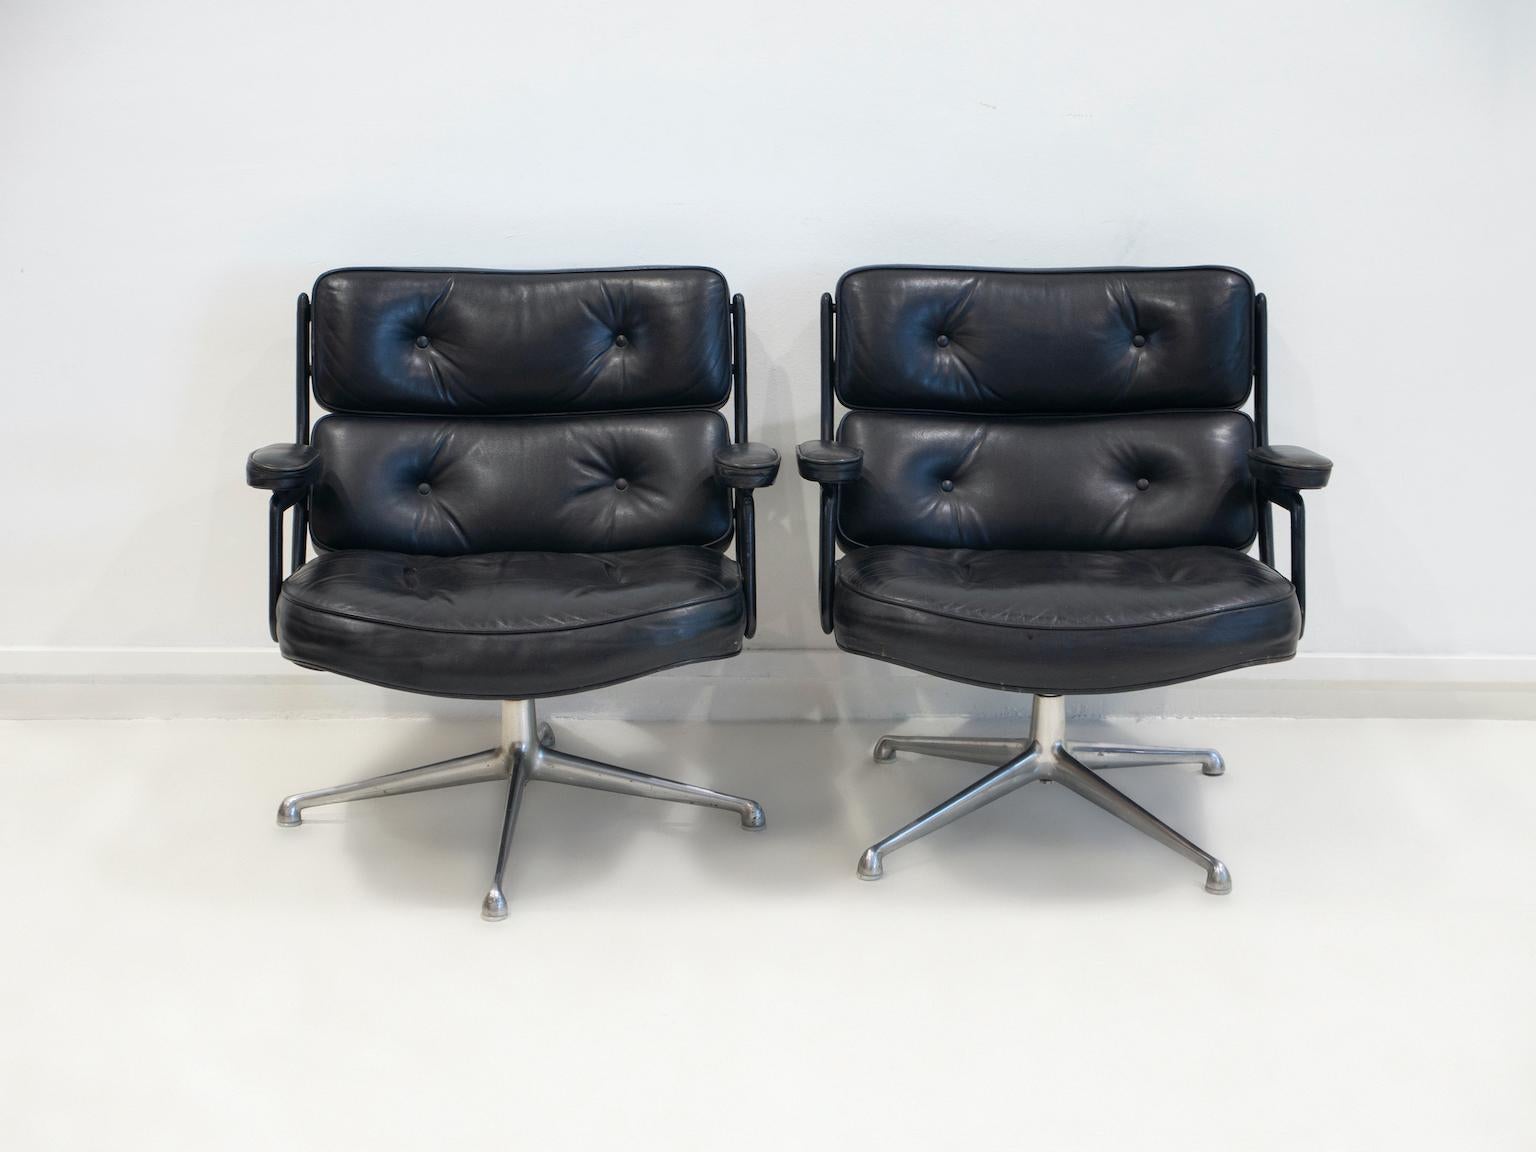 Paire de fauteuils pivotants en cuir noir, modèle ES 108, conçus par Charles & Ray Eames, fabriqués par Vitra. 
La chaise Lobby a été conçue en 1960 pour les espaces de réception du bâtiment Time Life à New York. 
Structure en aluminium poli,